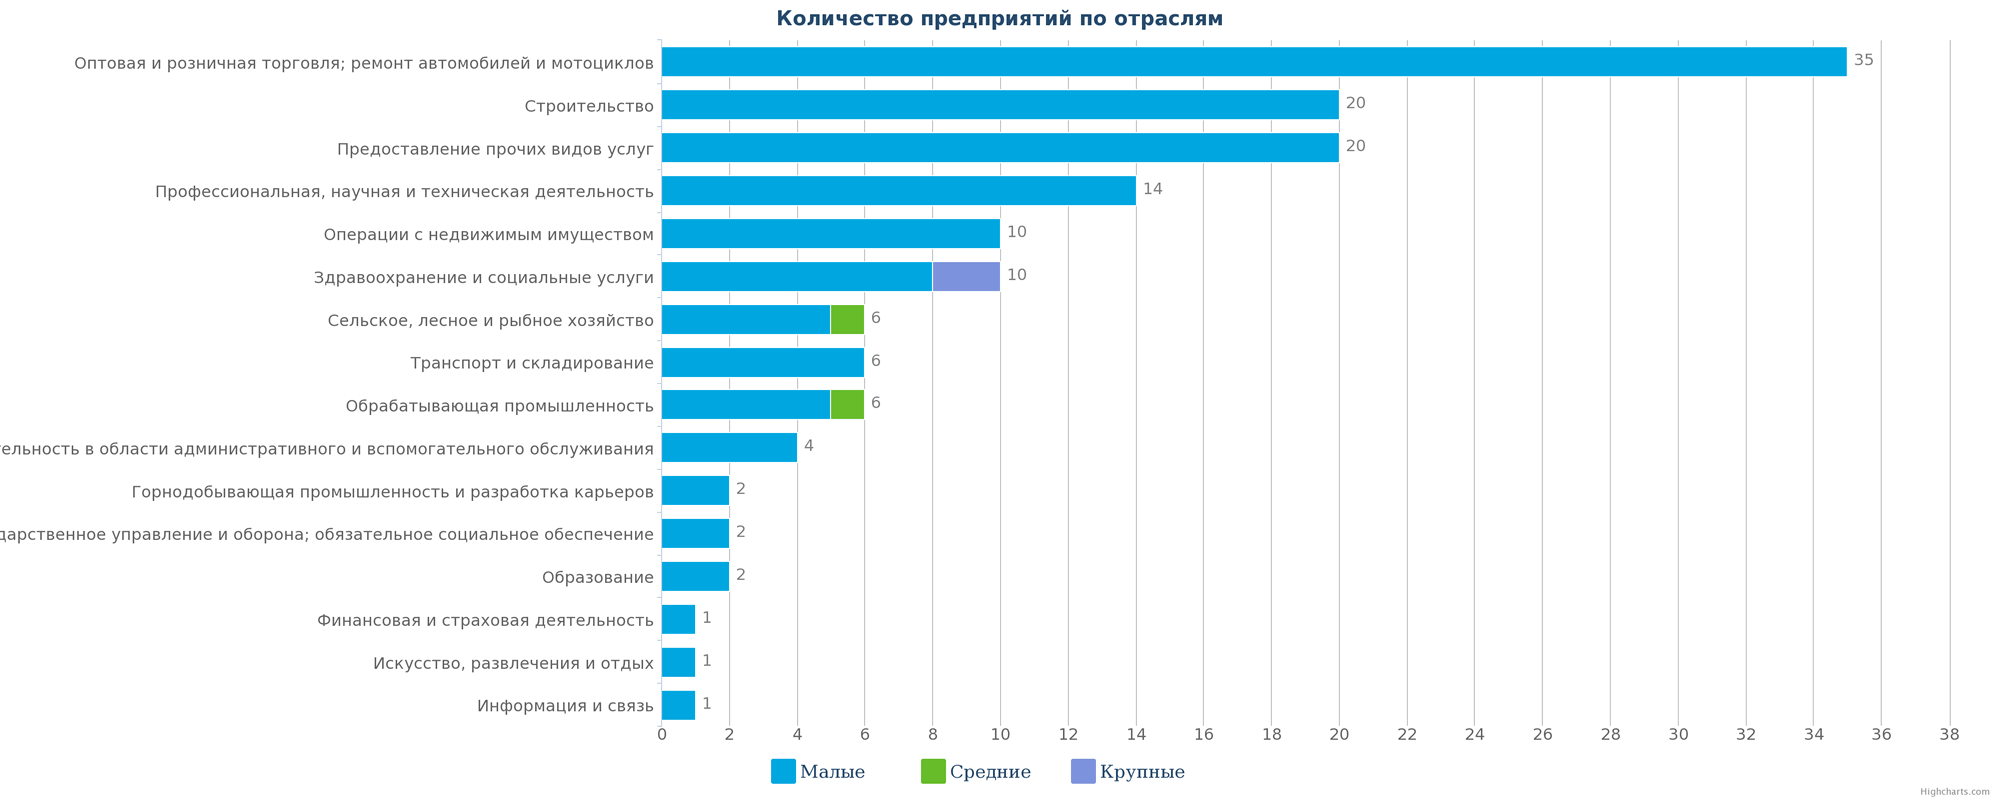 Количество ликвидированных предприятий по отраслям